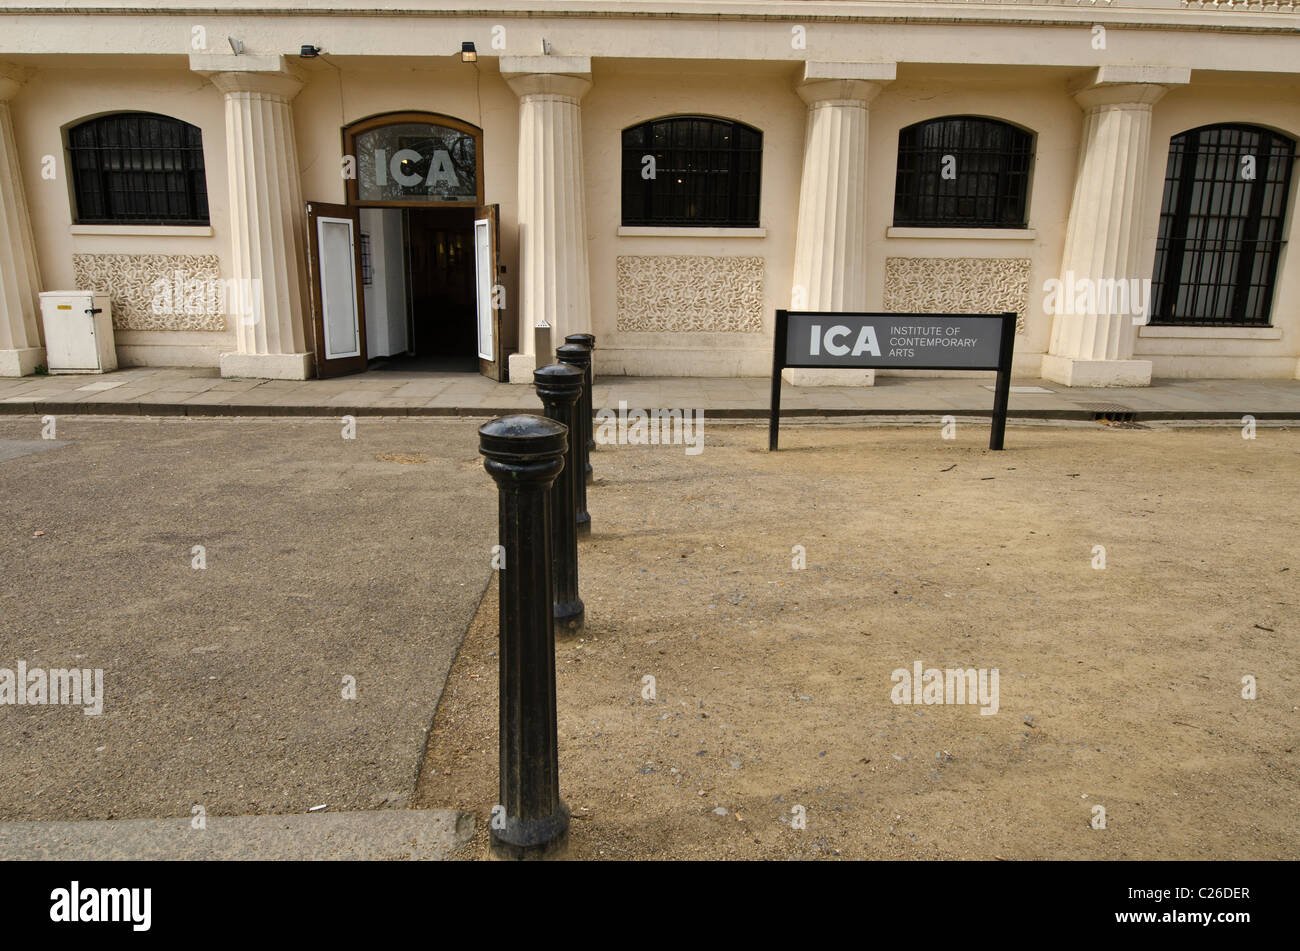 Institut des arts contemporains d'entrée , l'ICA Mall, Londres Uk Banque D'Images